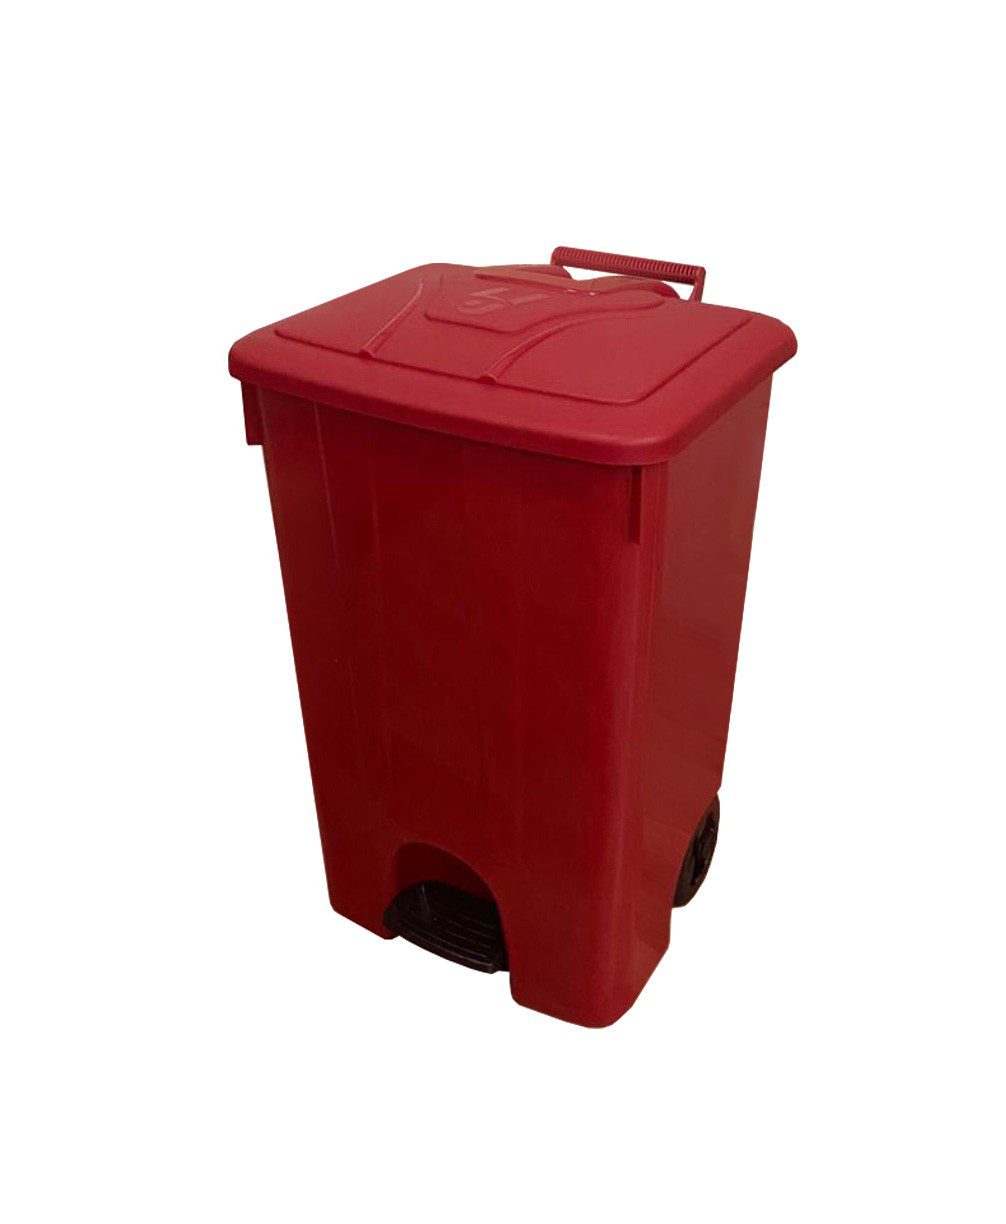 Бак TELKAR Waste bucket cornered (85л) с крышкой и педалью, на колесах (для сбора, хранения и транспортировки отходов), красный